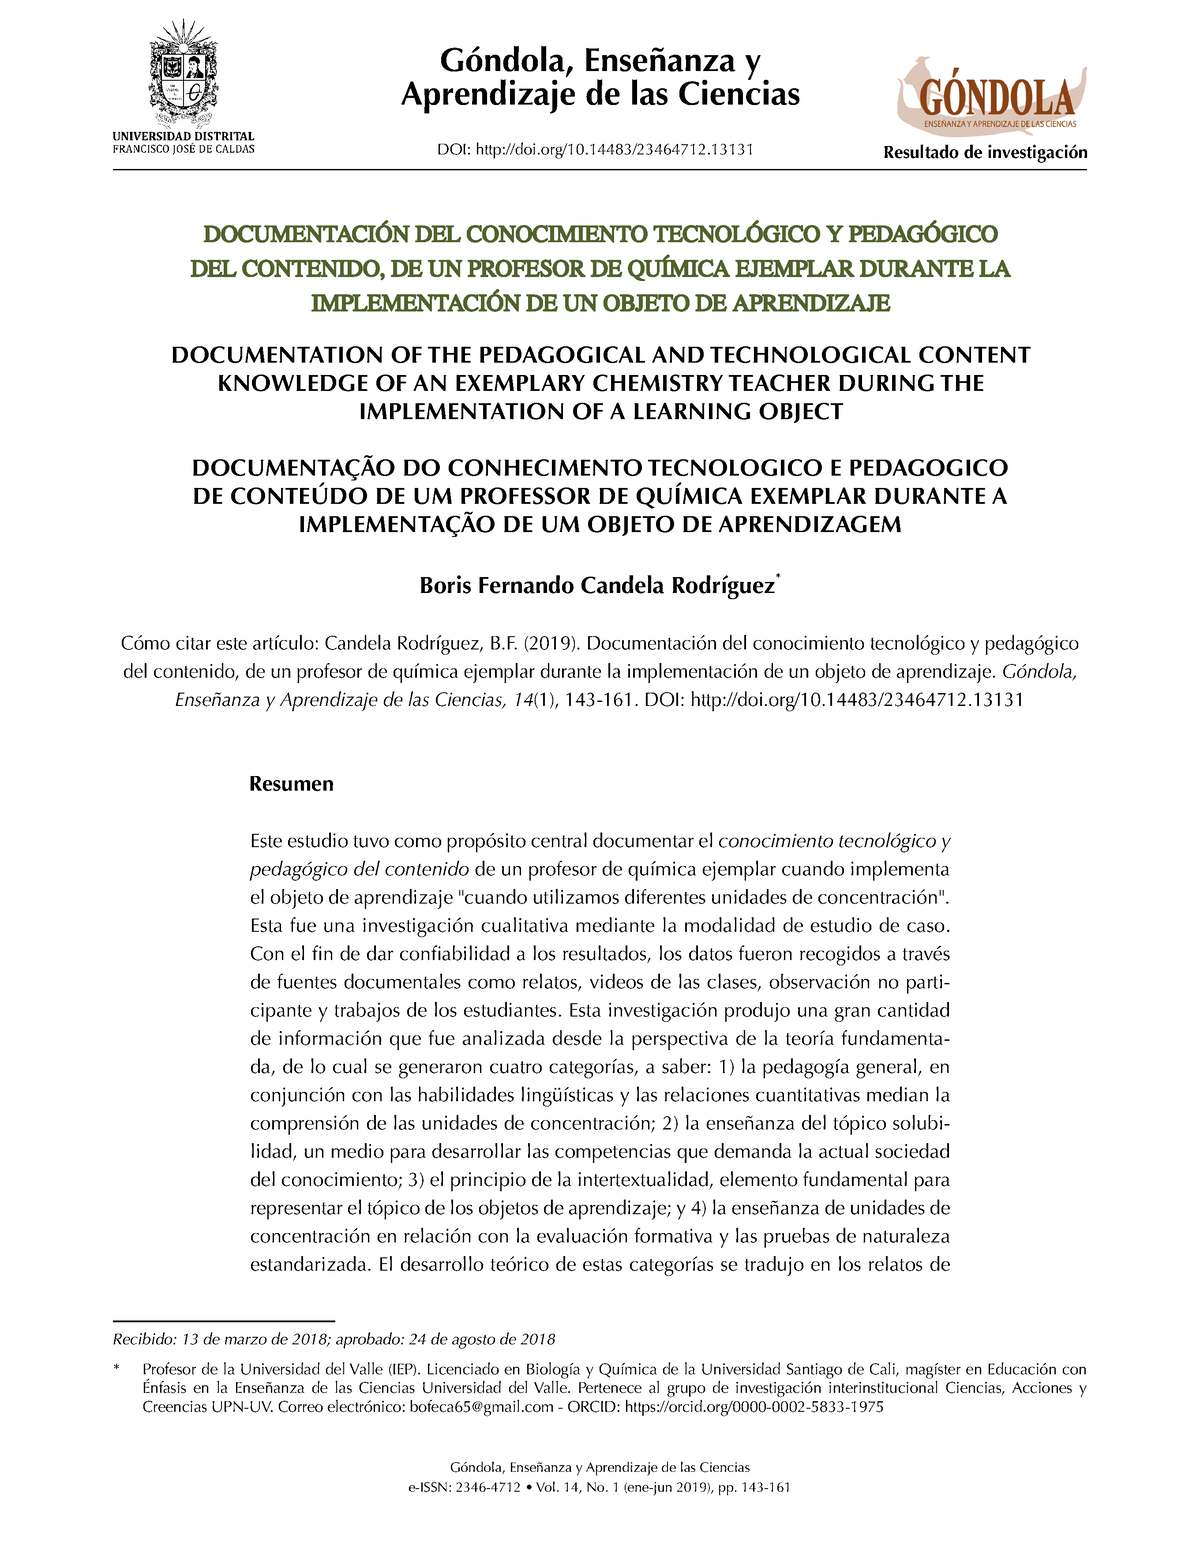 PDF) Góndola, Enseñanza y Aprendizaje de las Ciencias - A